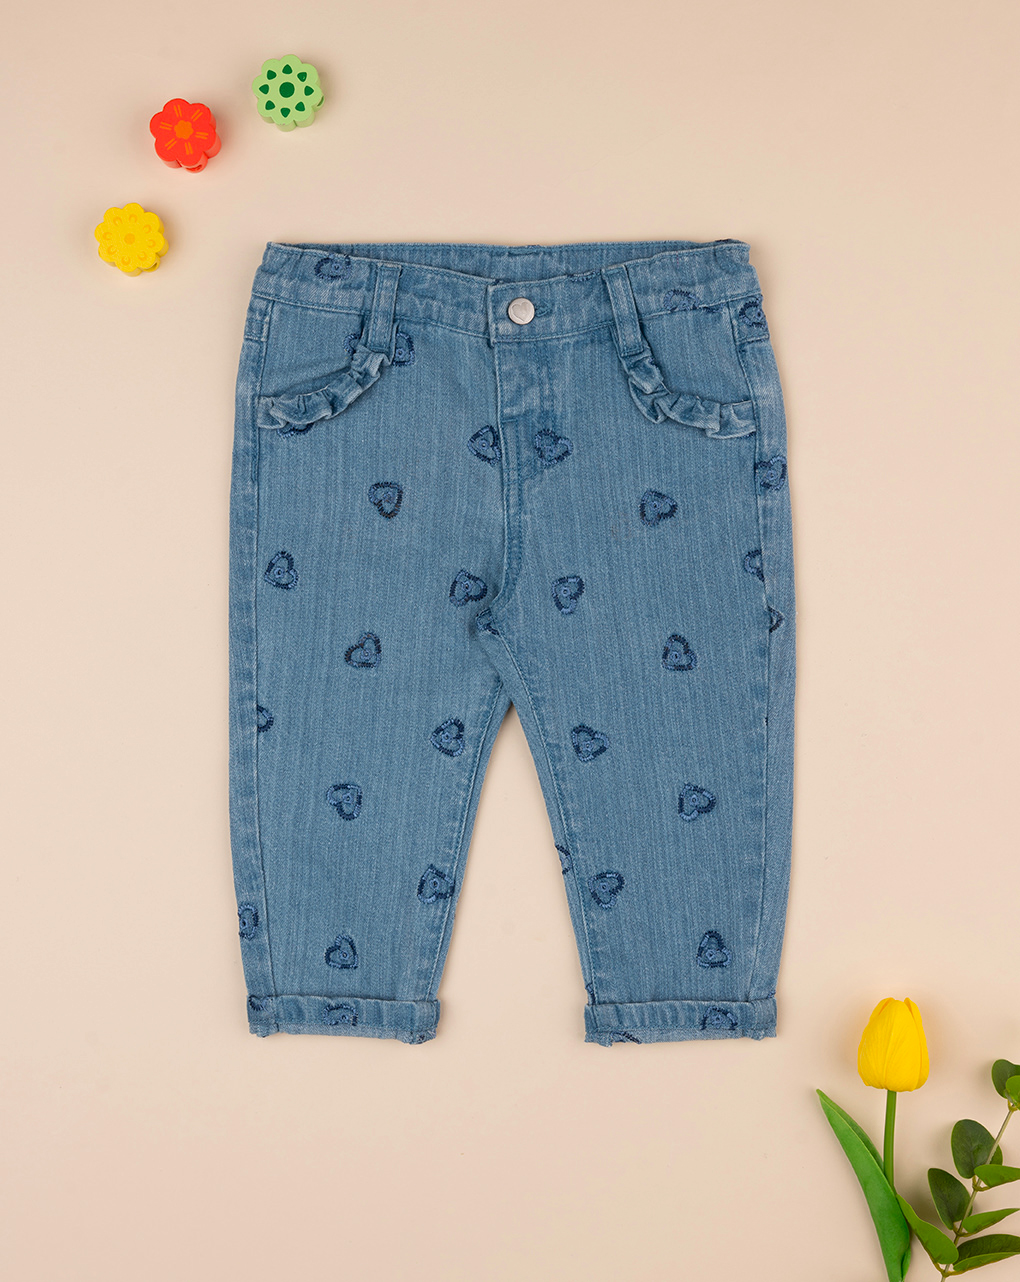 βρεφικό τζιν παντελόνι μπλε με καρδούλες για κορίτσι